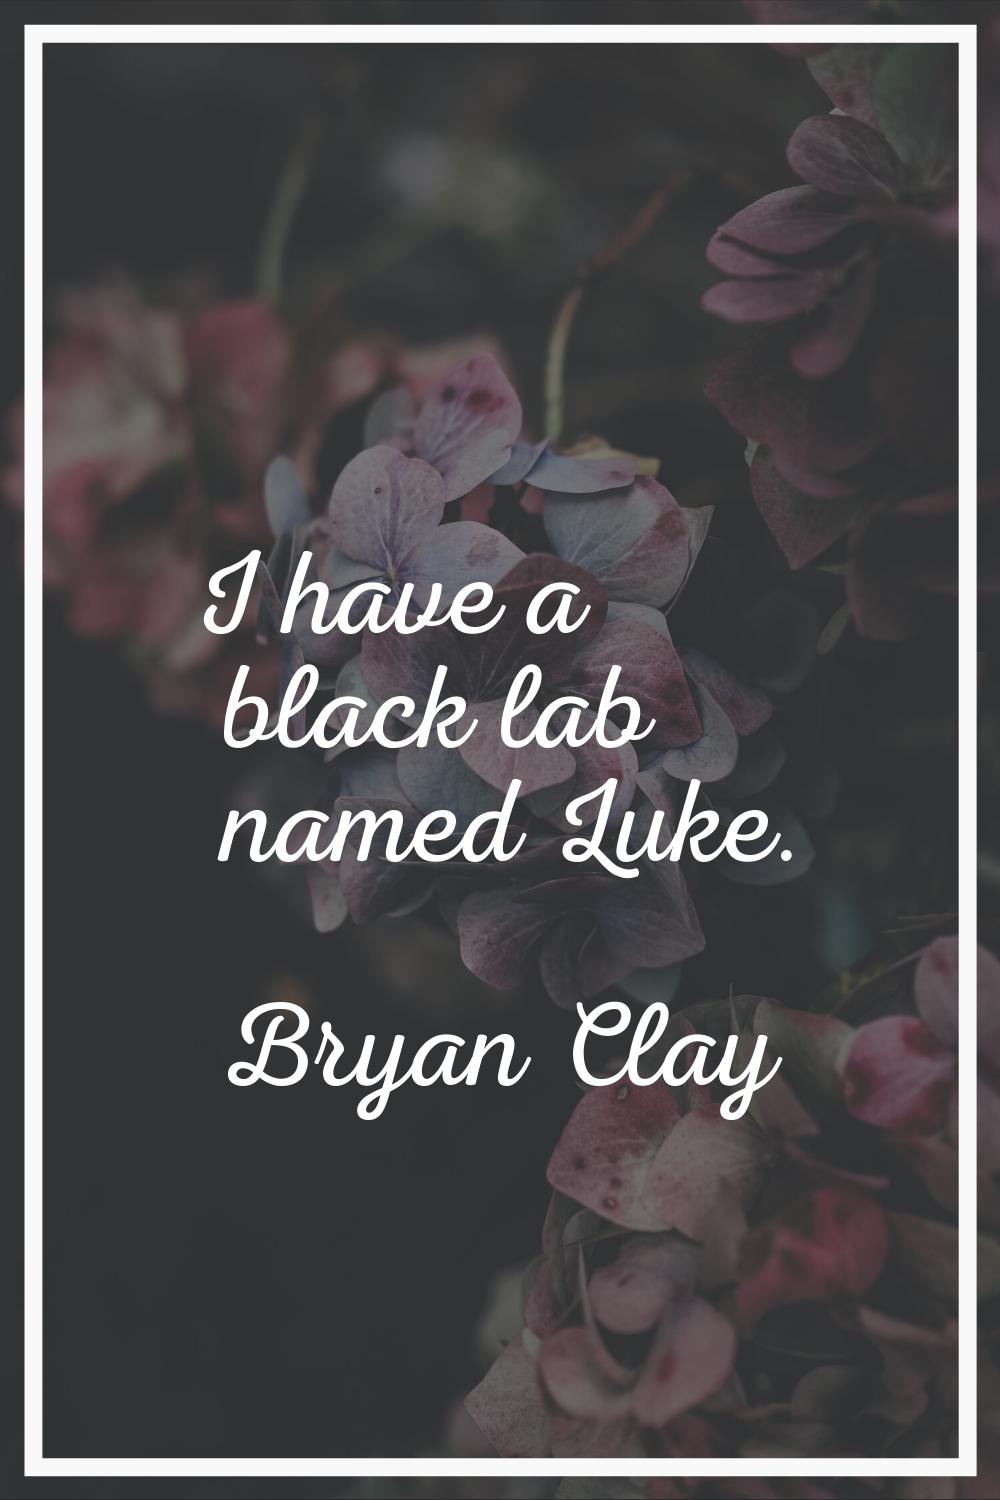 I have a black lab named Luke.